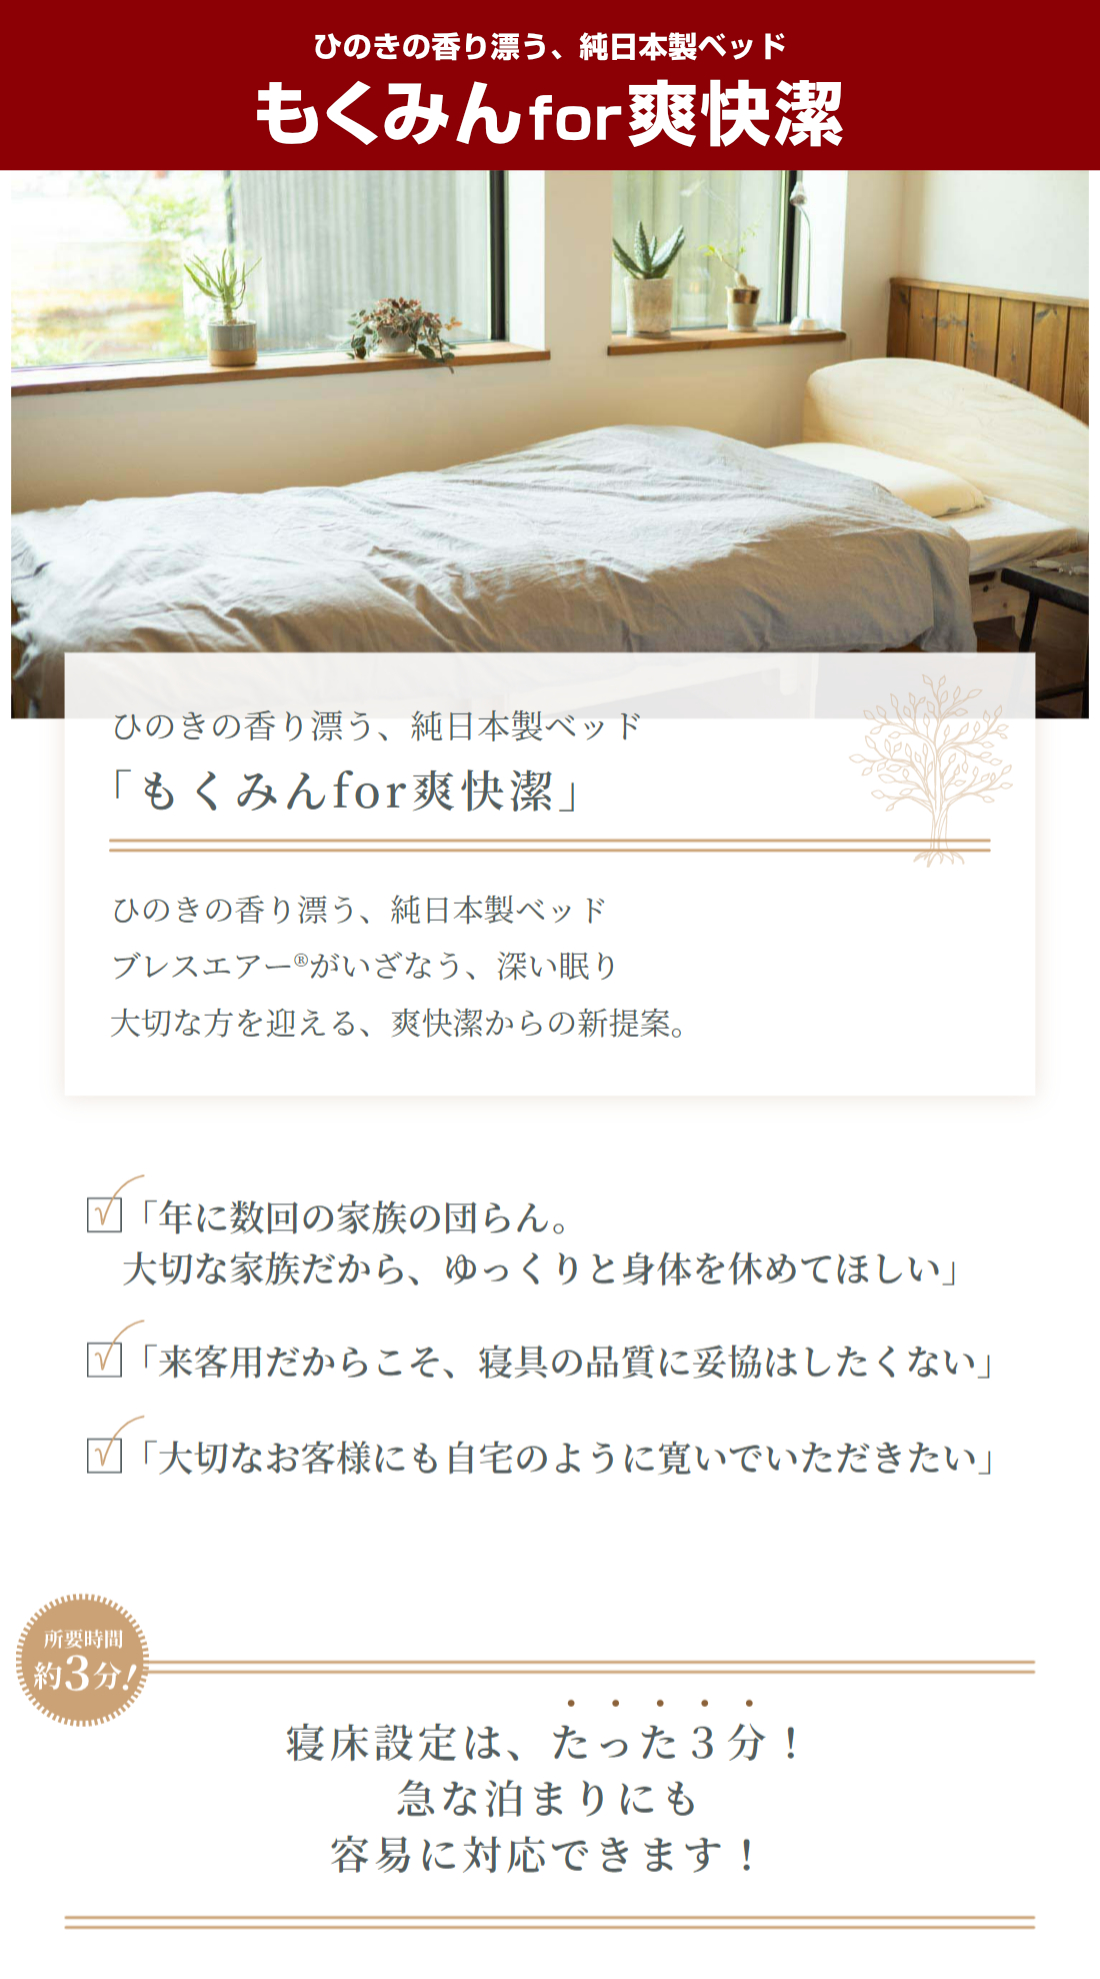 ひのきの香り漂う、純日本製ベッド もくみんfor爽快潔